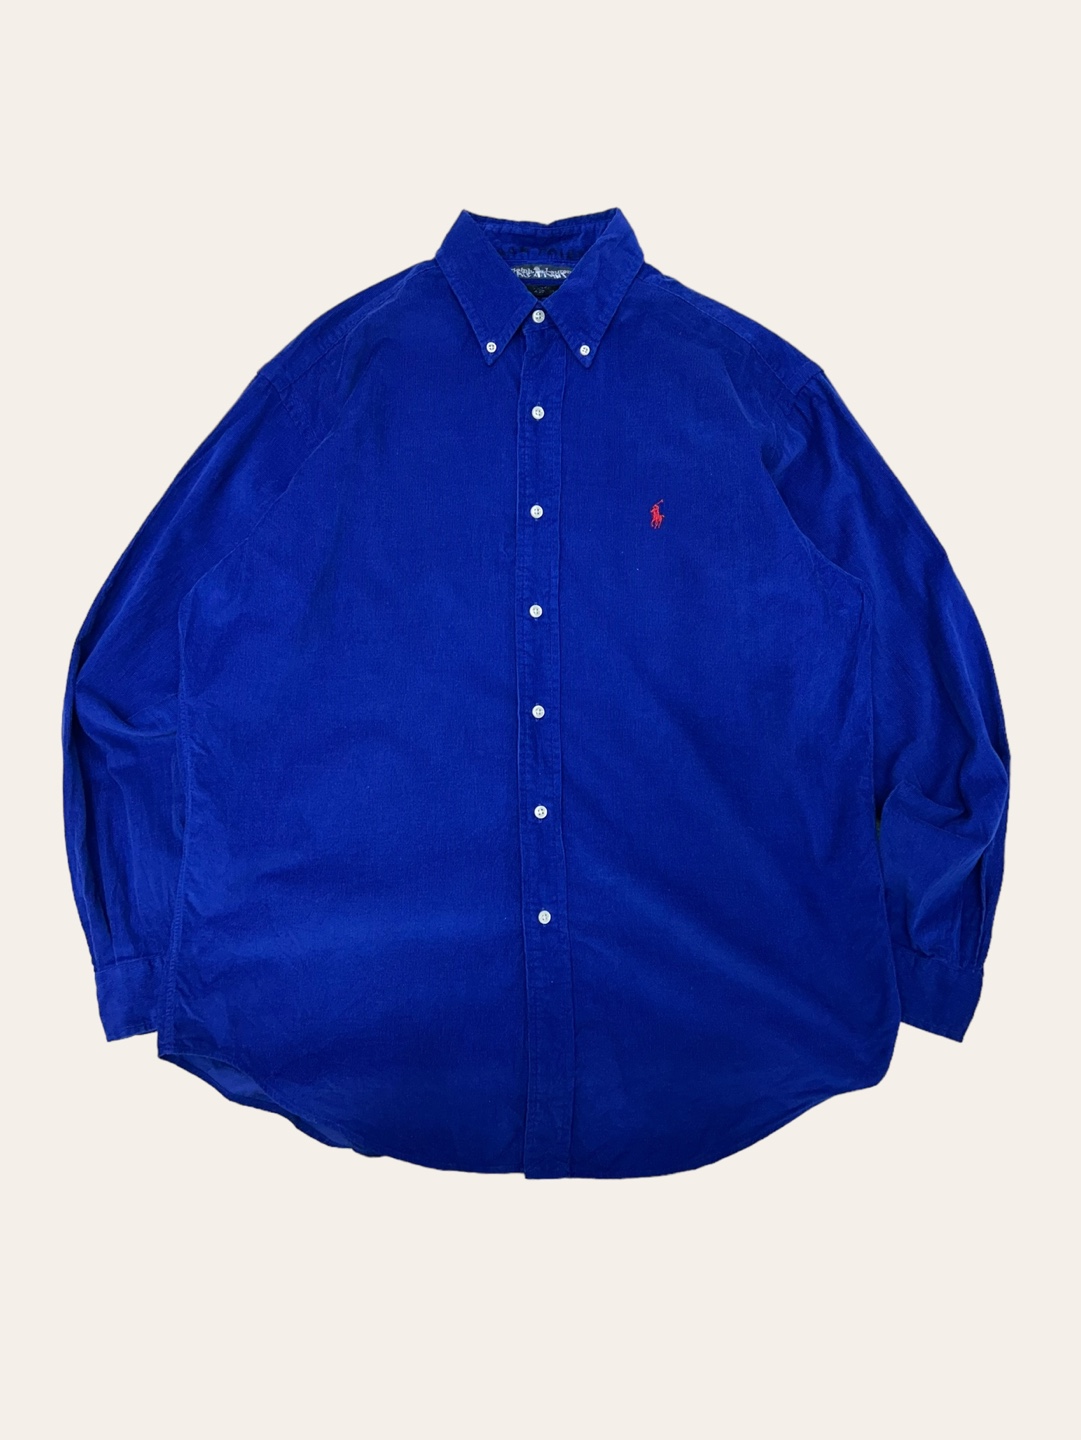 (From USA)Polo ralph lauren deep blue corduroy shirt M